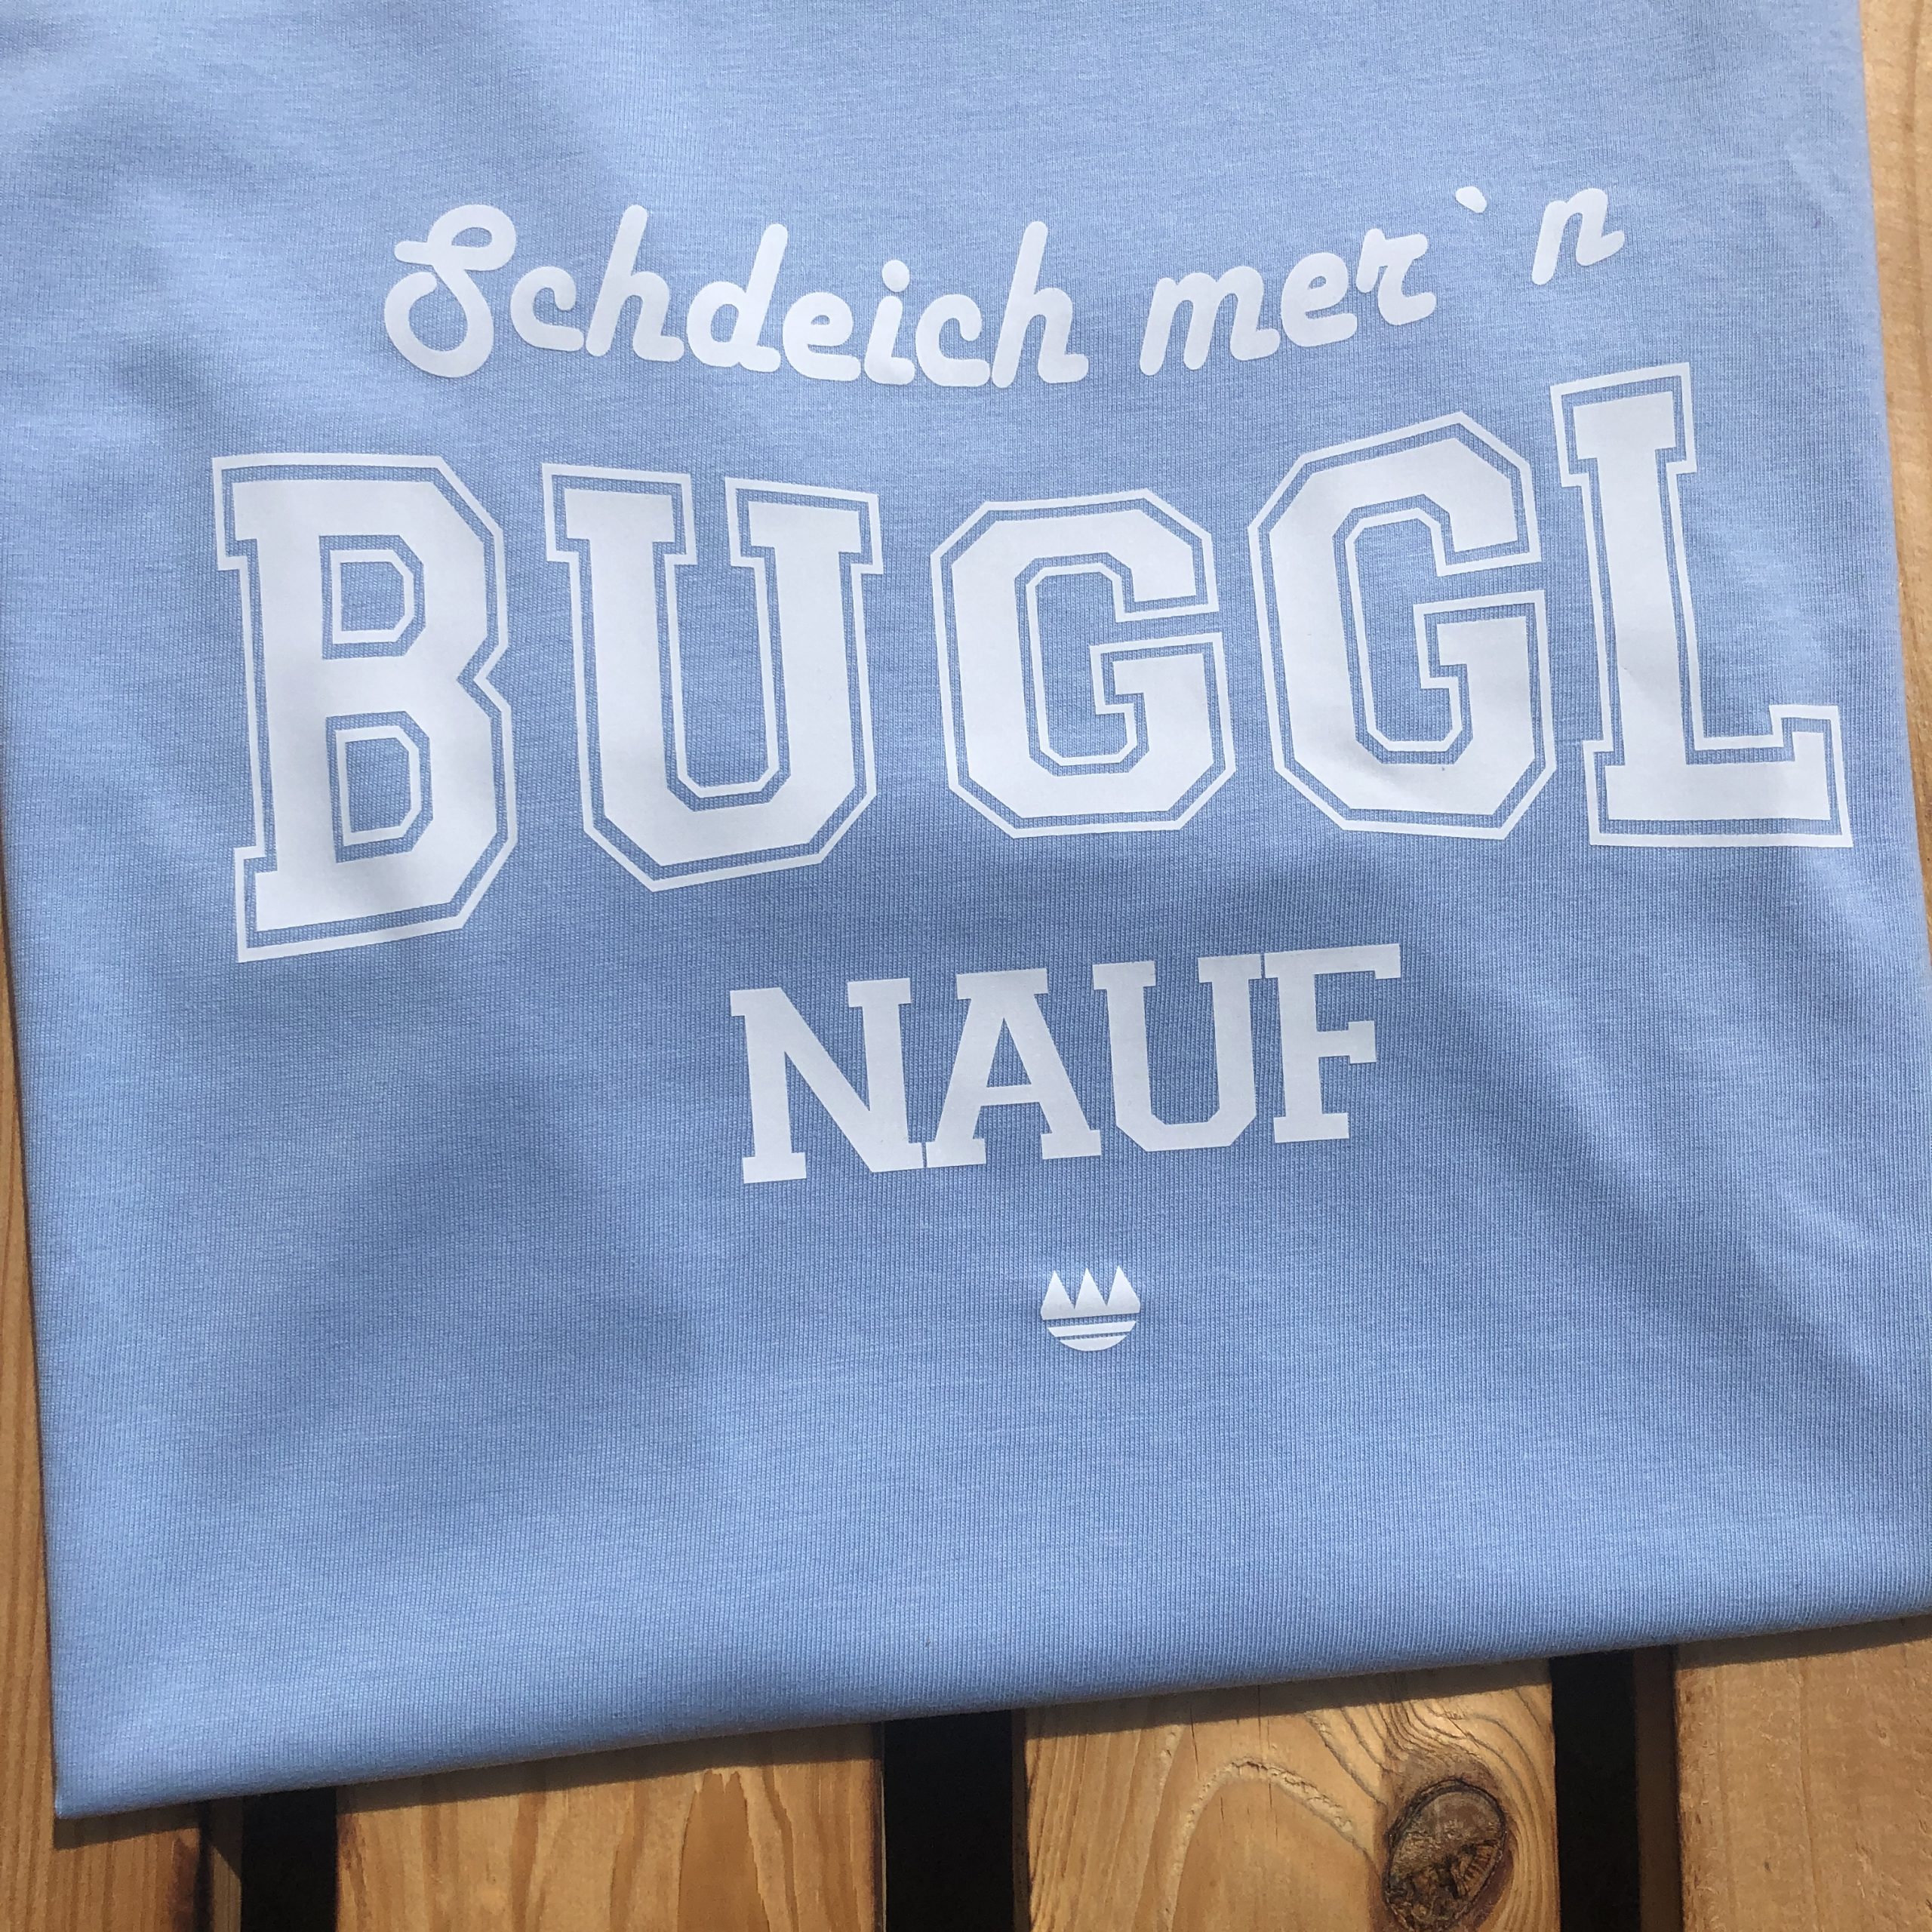 Schdeich mern Buggl nauf Damen Shirt Frankenstyle Fränkische T-Shirts Shop Würzburg